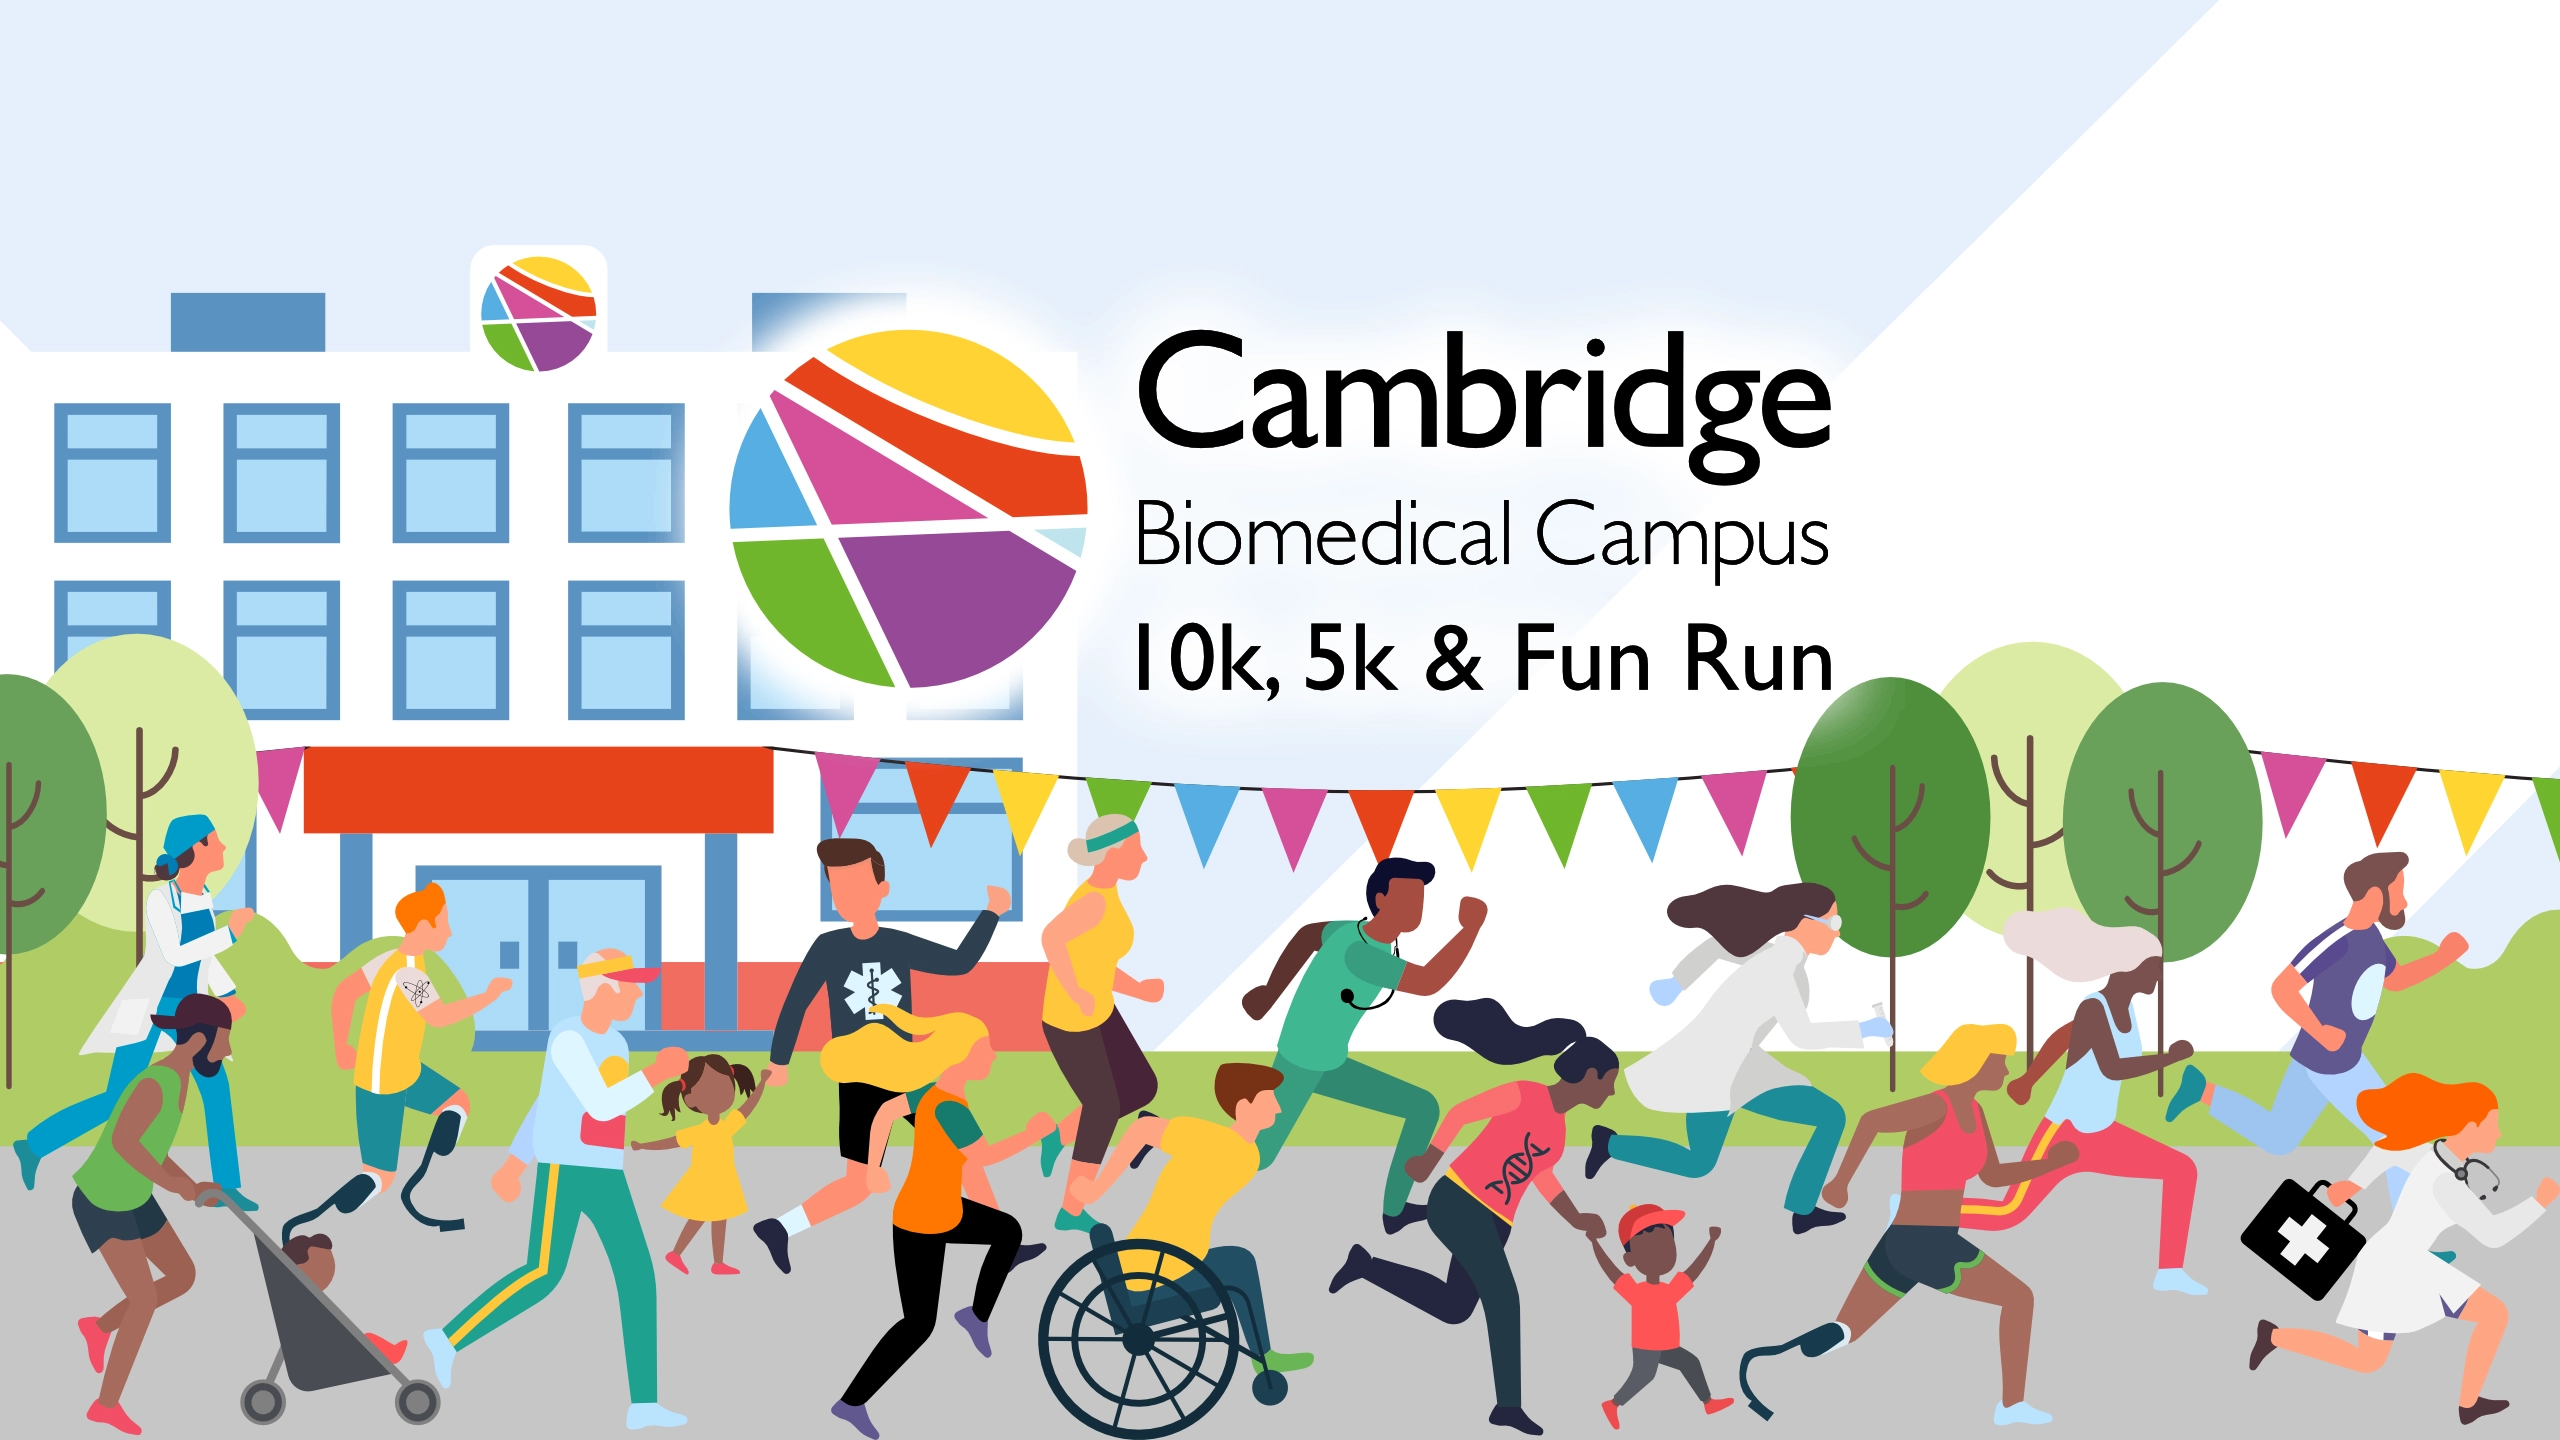 ATW Cambridge Biomedical Campus 10k, 5k and Fun Run